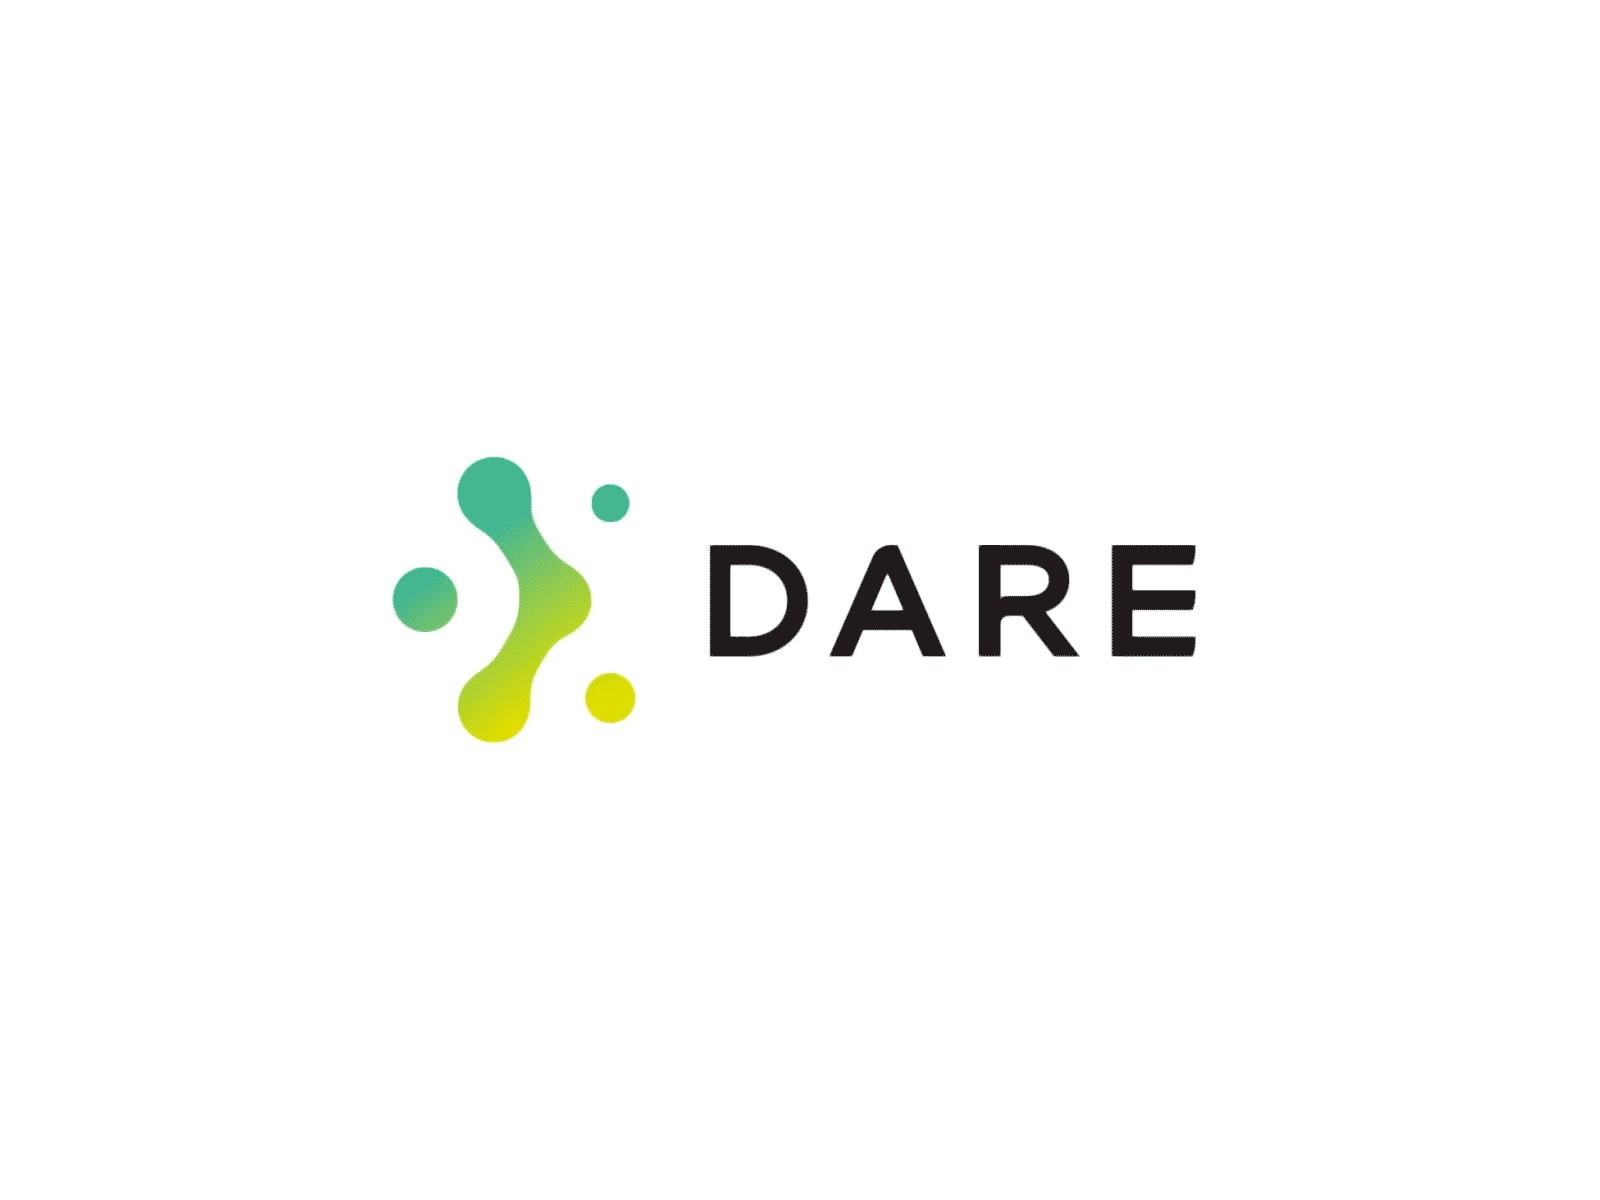 Dare Logo by Ian Sketch on Dribbble